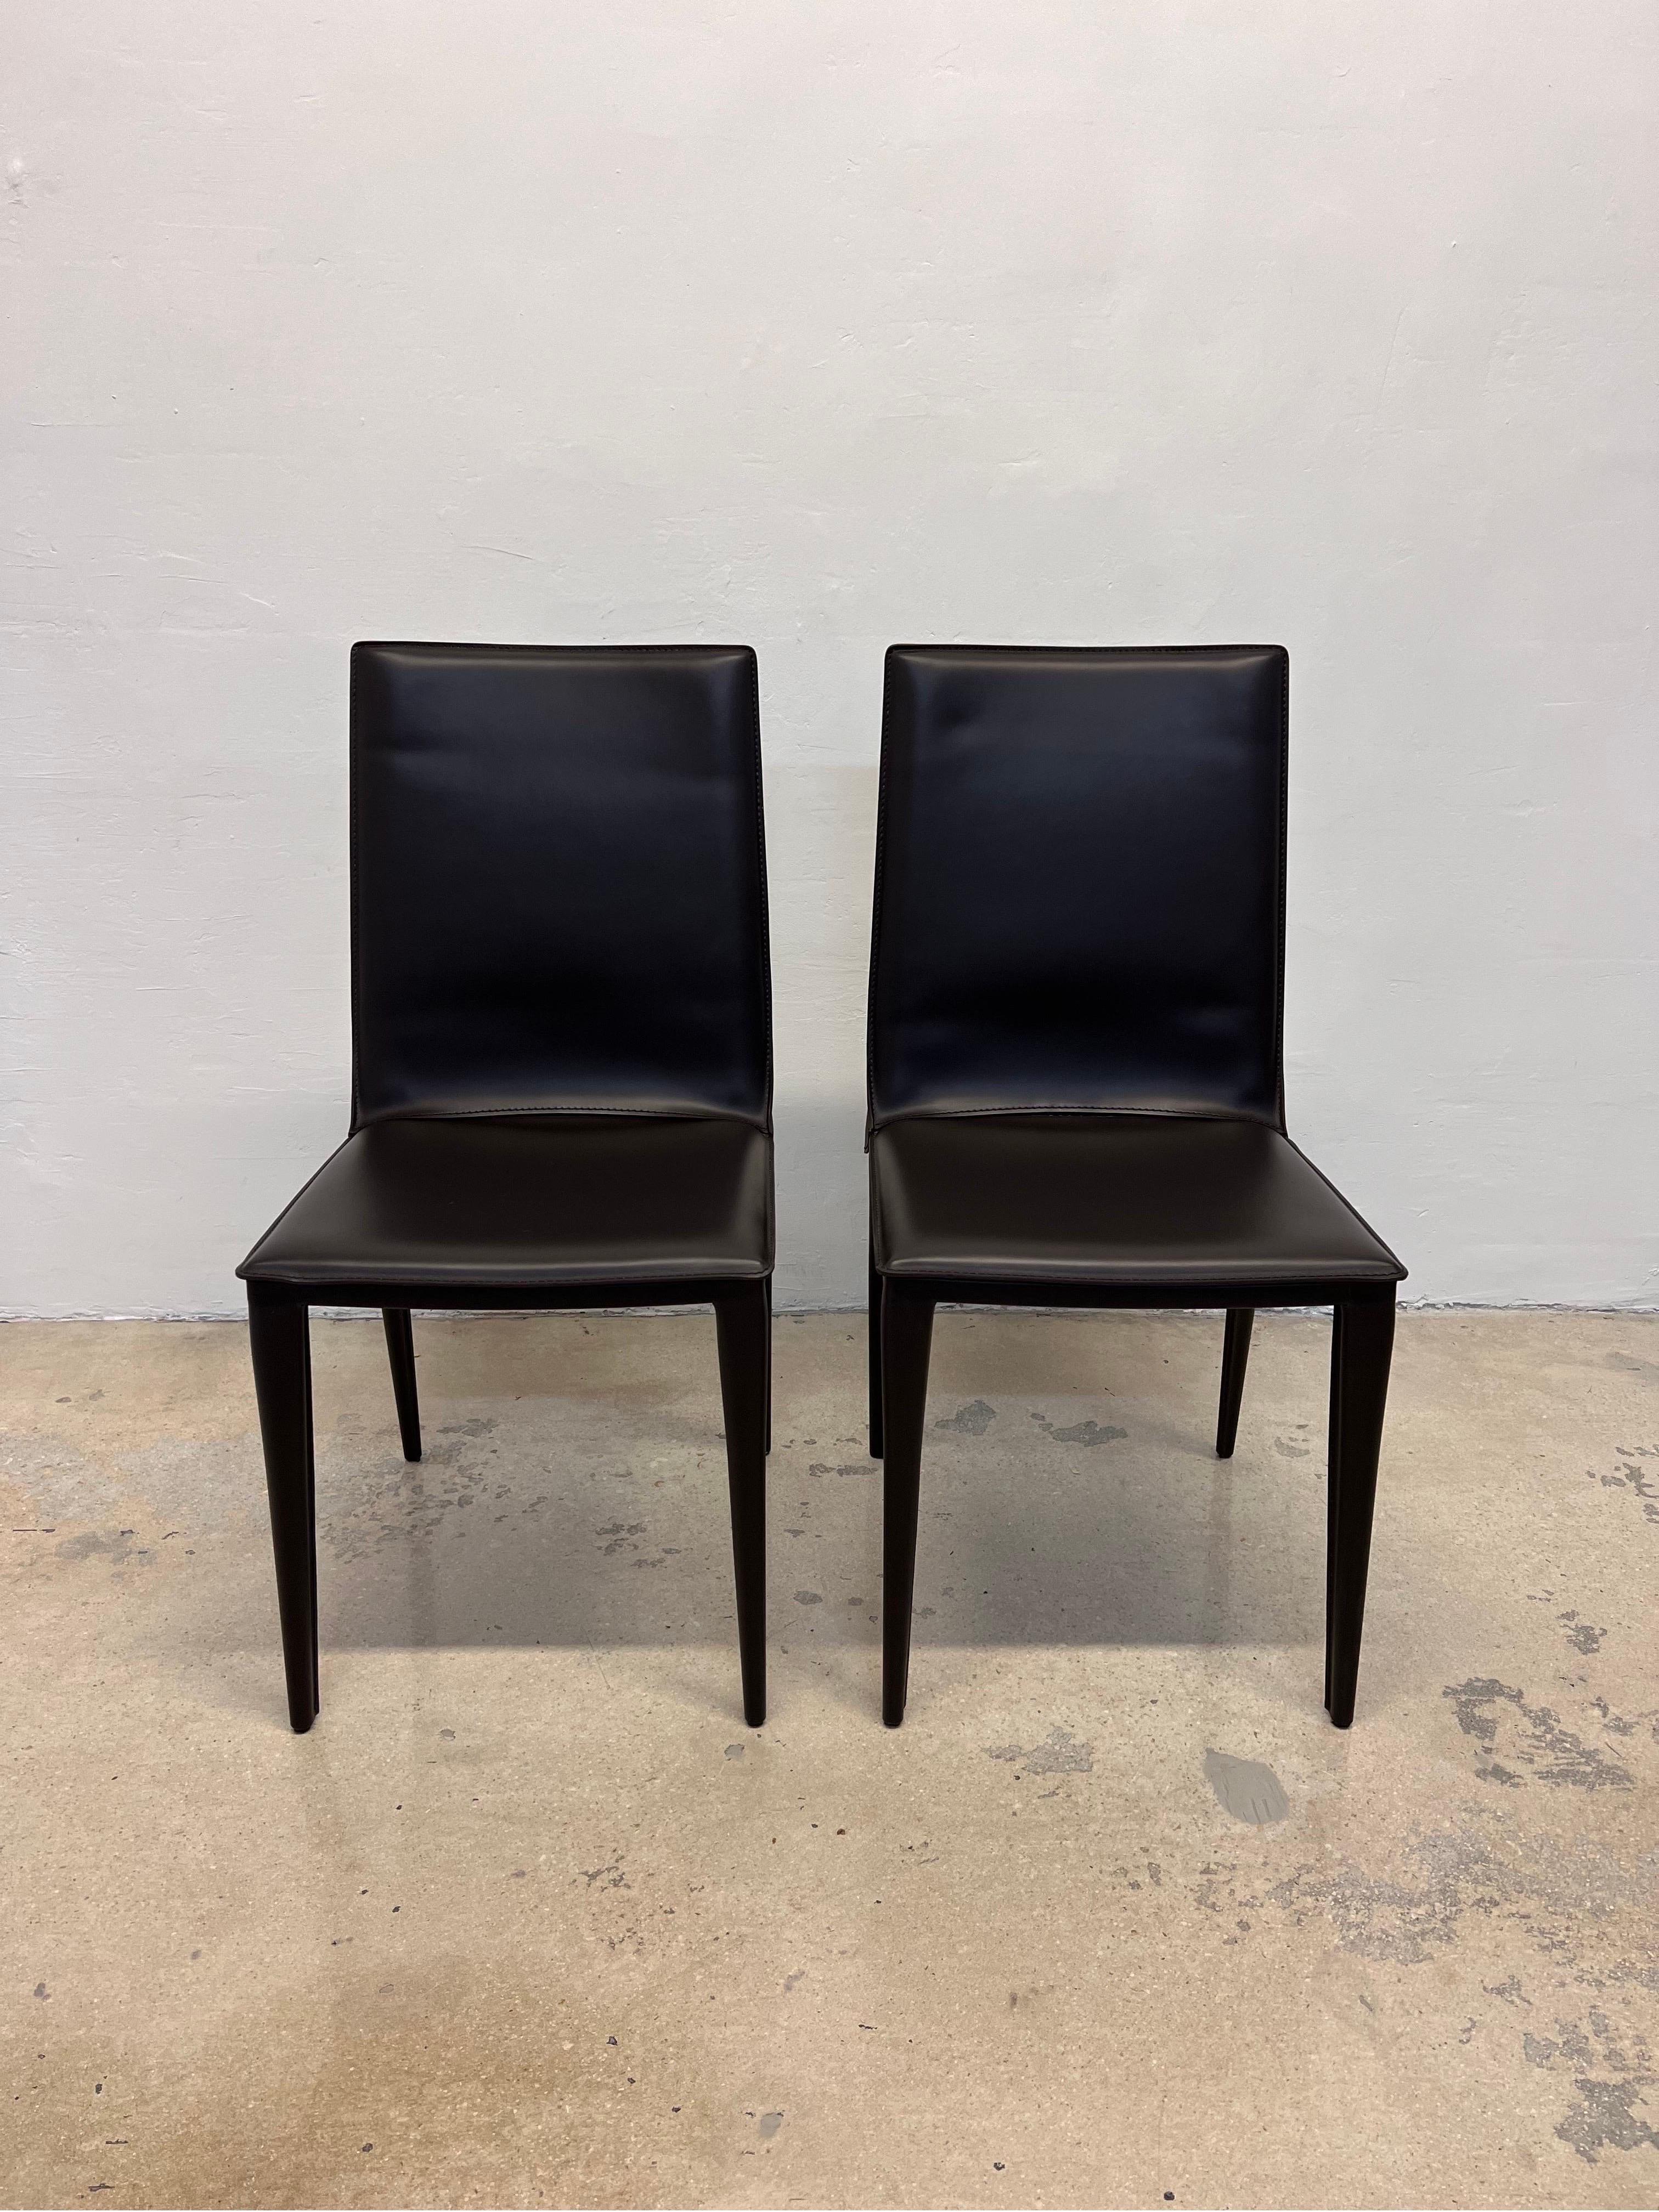 Paire de chaises d'appoint Bottega en cuir brun chocolat conçues par Renzo Fauciglietti & Graziella Bianchi pour Design Within Reach. 

La chaise Bottega (2003) est constituée d'un dossier harmonieux en tôle d'acier qui se plie avec vous pour vous